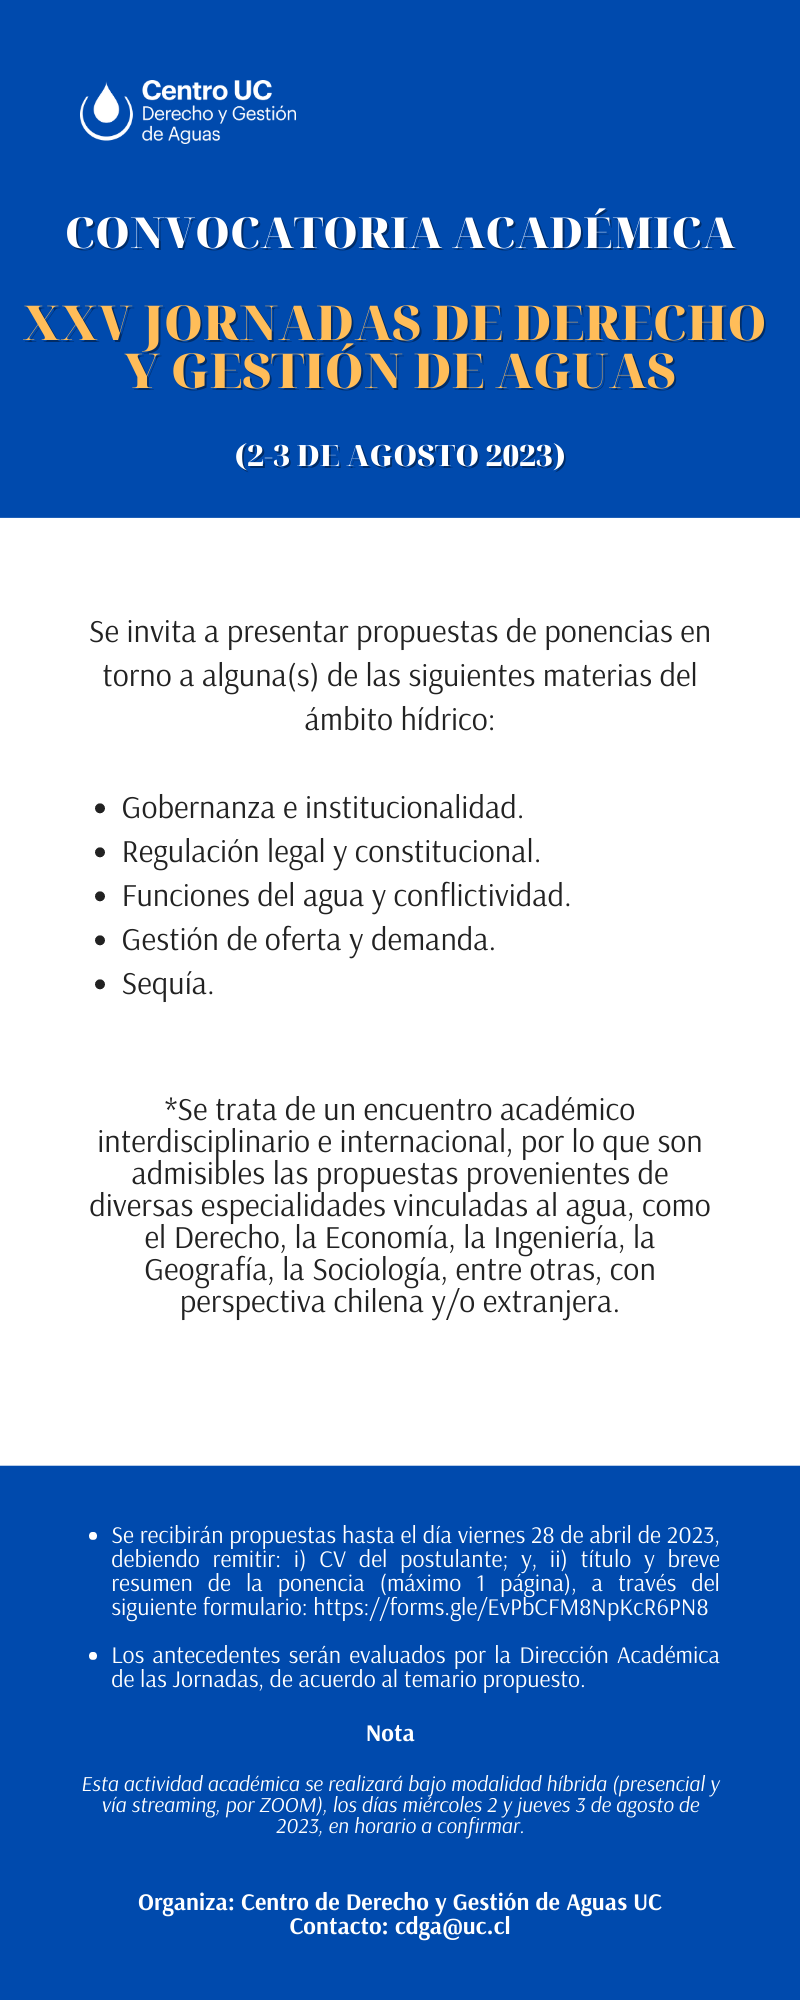 ¡Convocatoria académica para las XXV Jornadas de Derecho y Gestión de Aguas UC 2023!